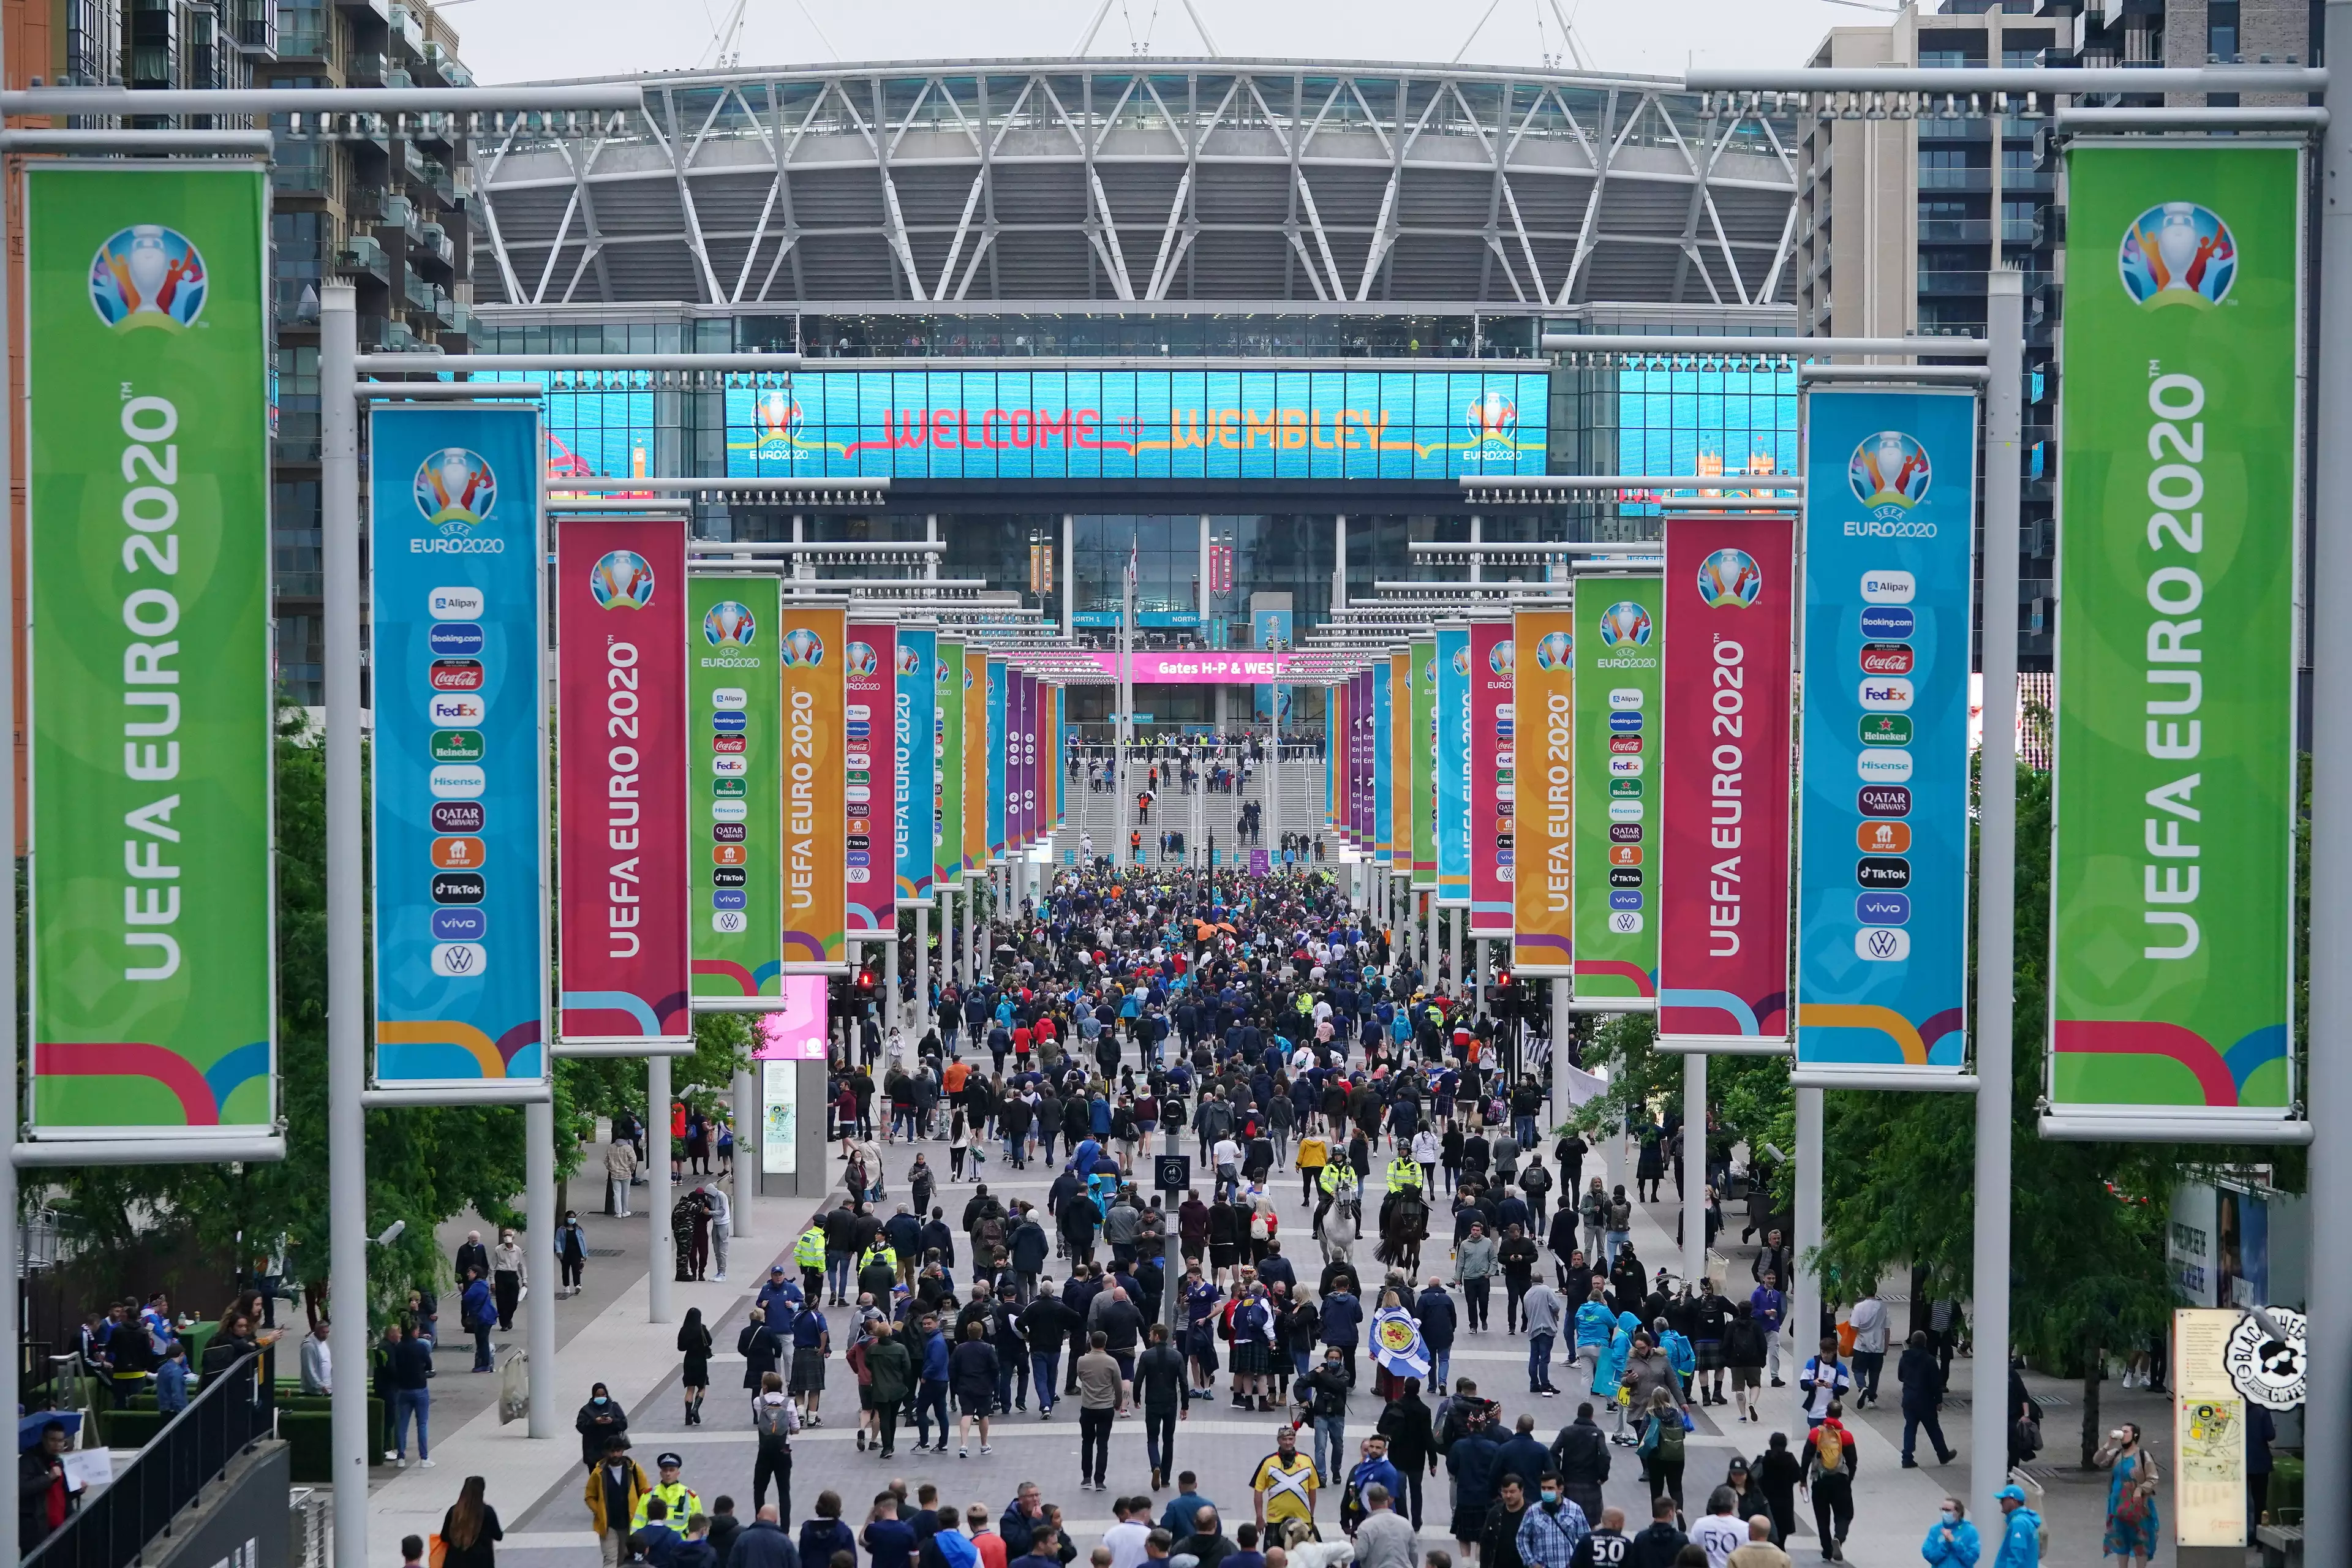 Fans arrive at Wembley. Image: PA Images